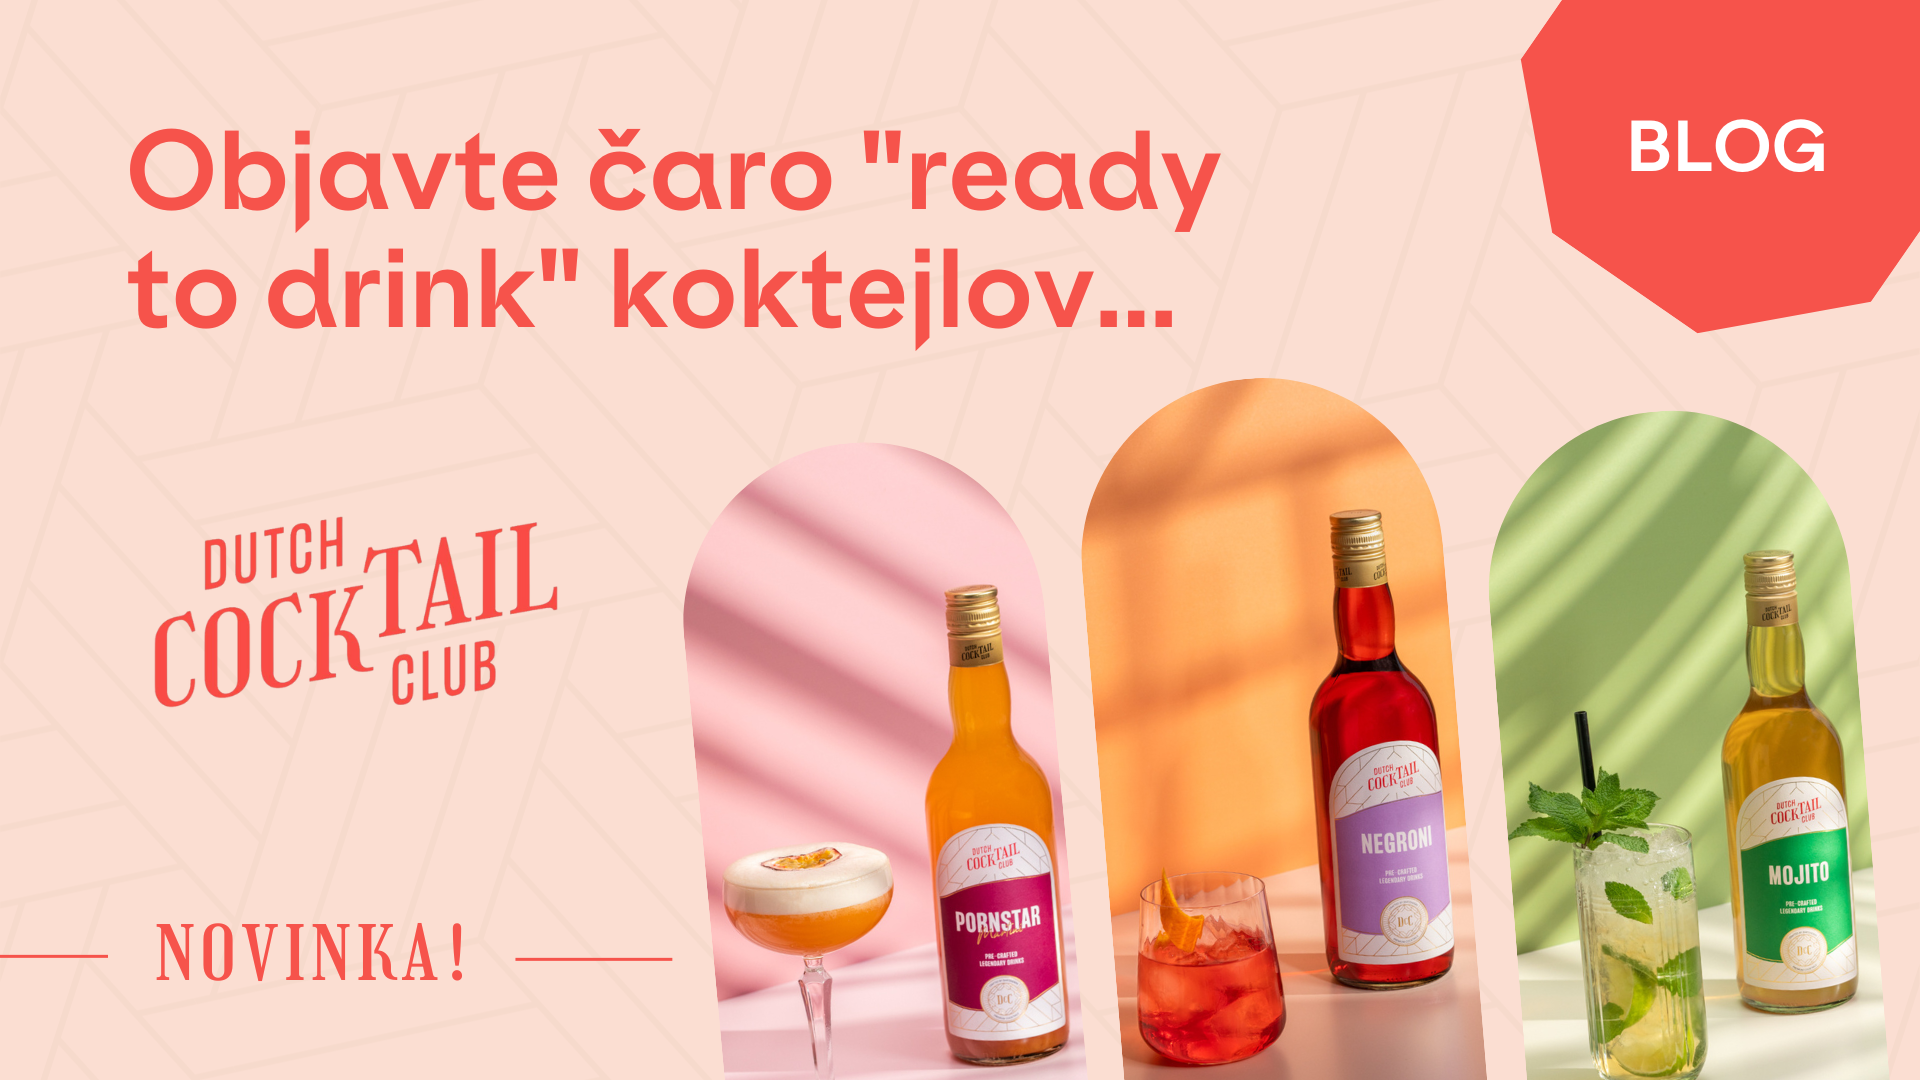 Objavte čaro "ready to drink" koktejlov značky Dutch Cocktail Club